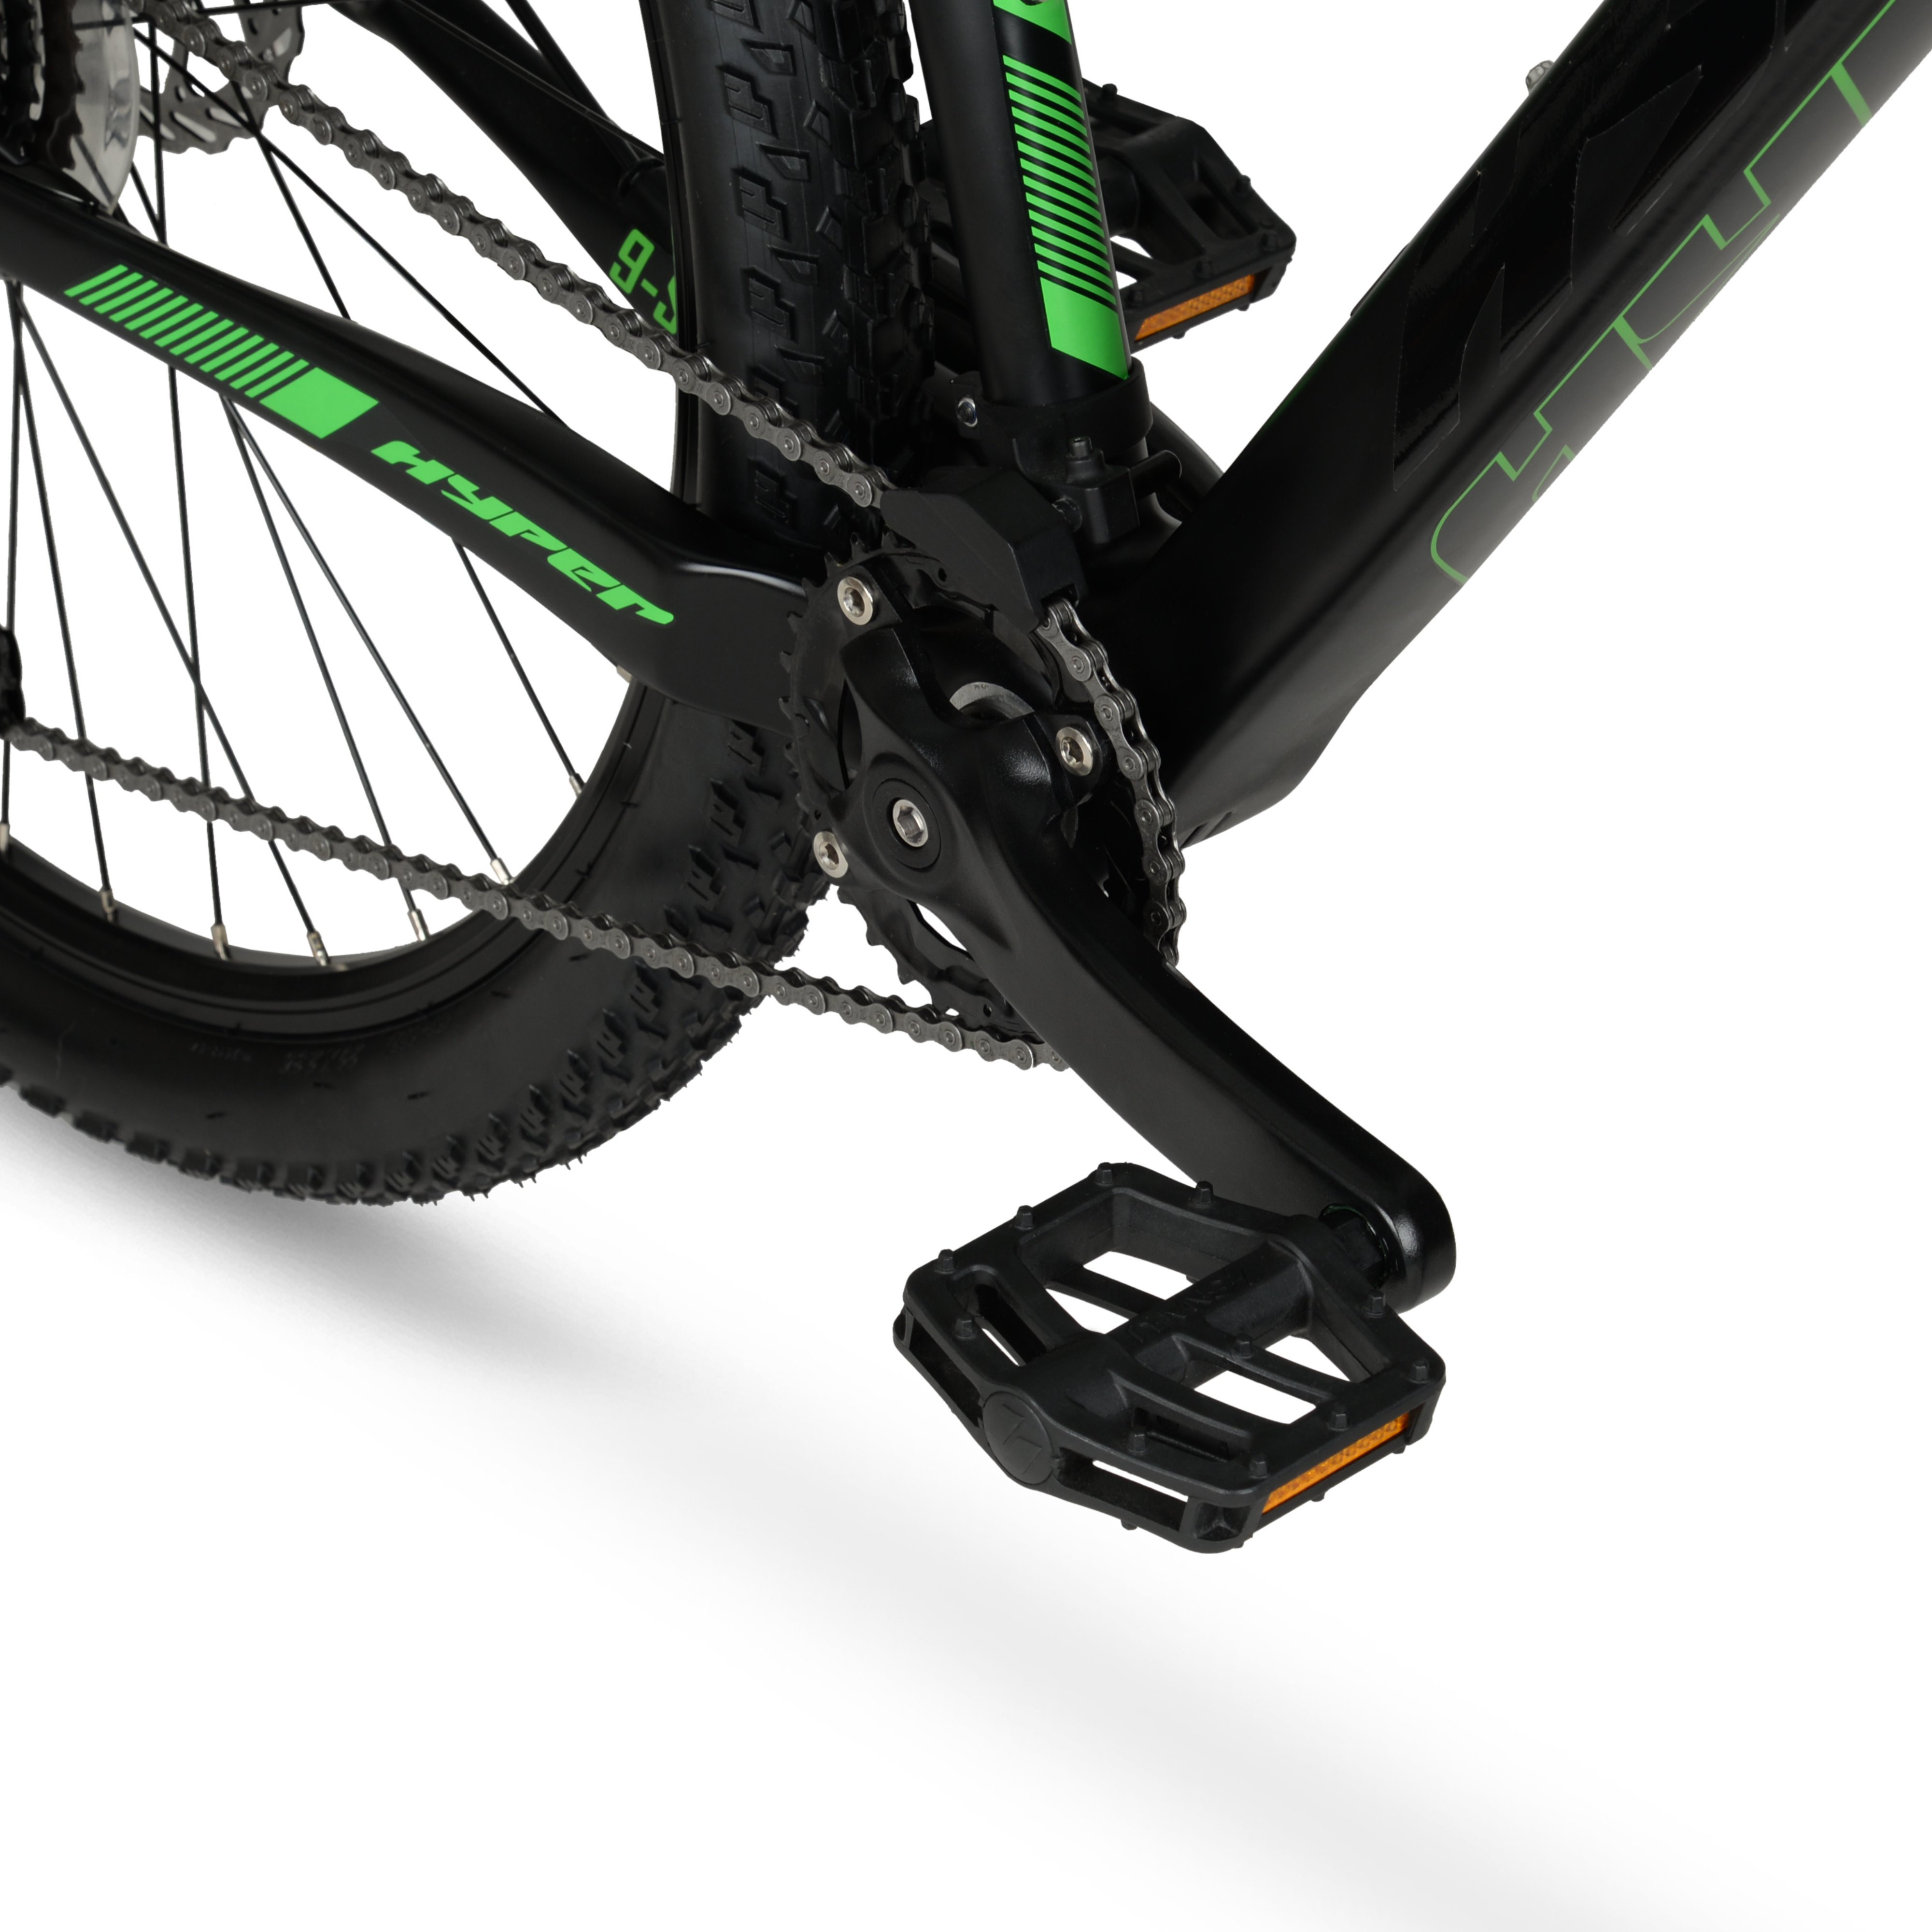 Hyper 29" Carbon Fiber Men's Mountain Bike, Black/Green - image 11 of 12